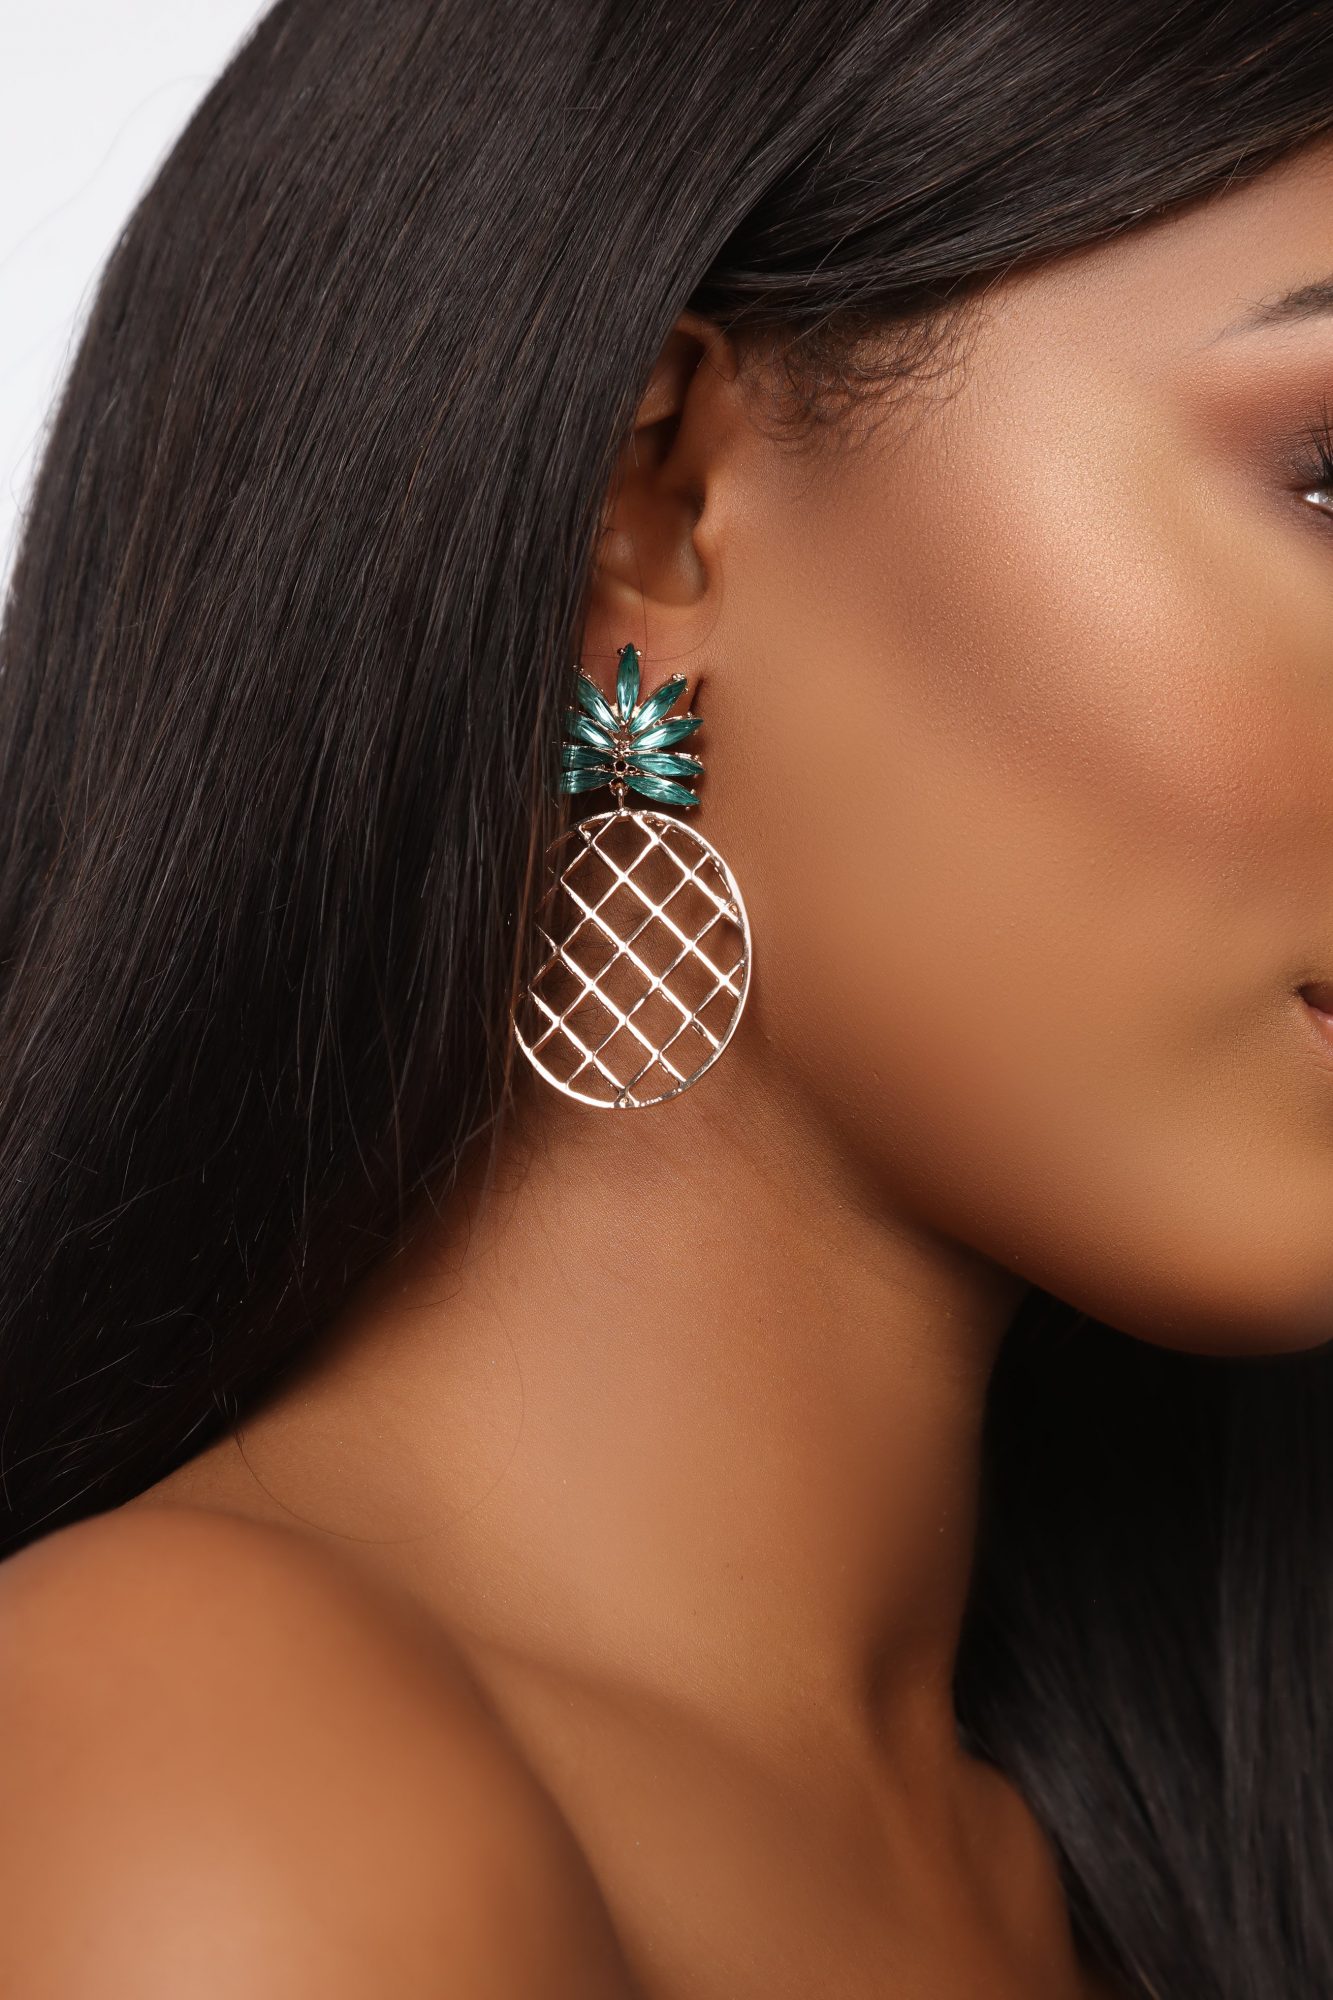 Fashion Nova pineapple earrings